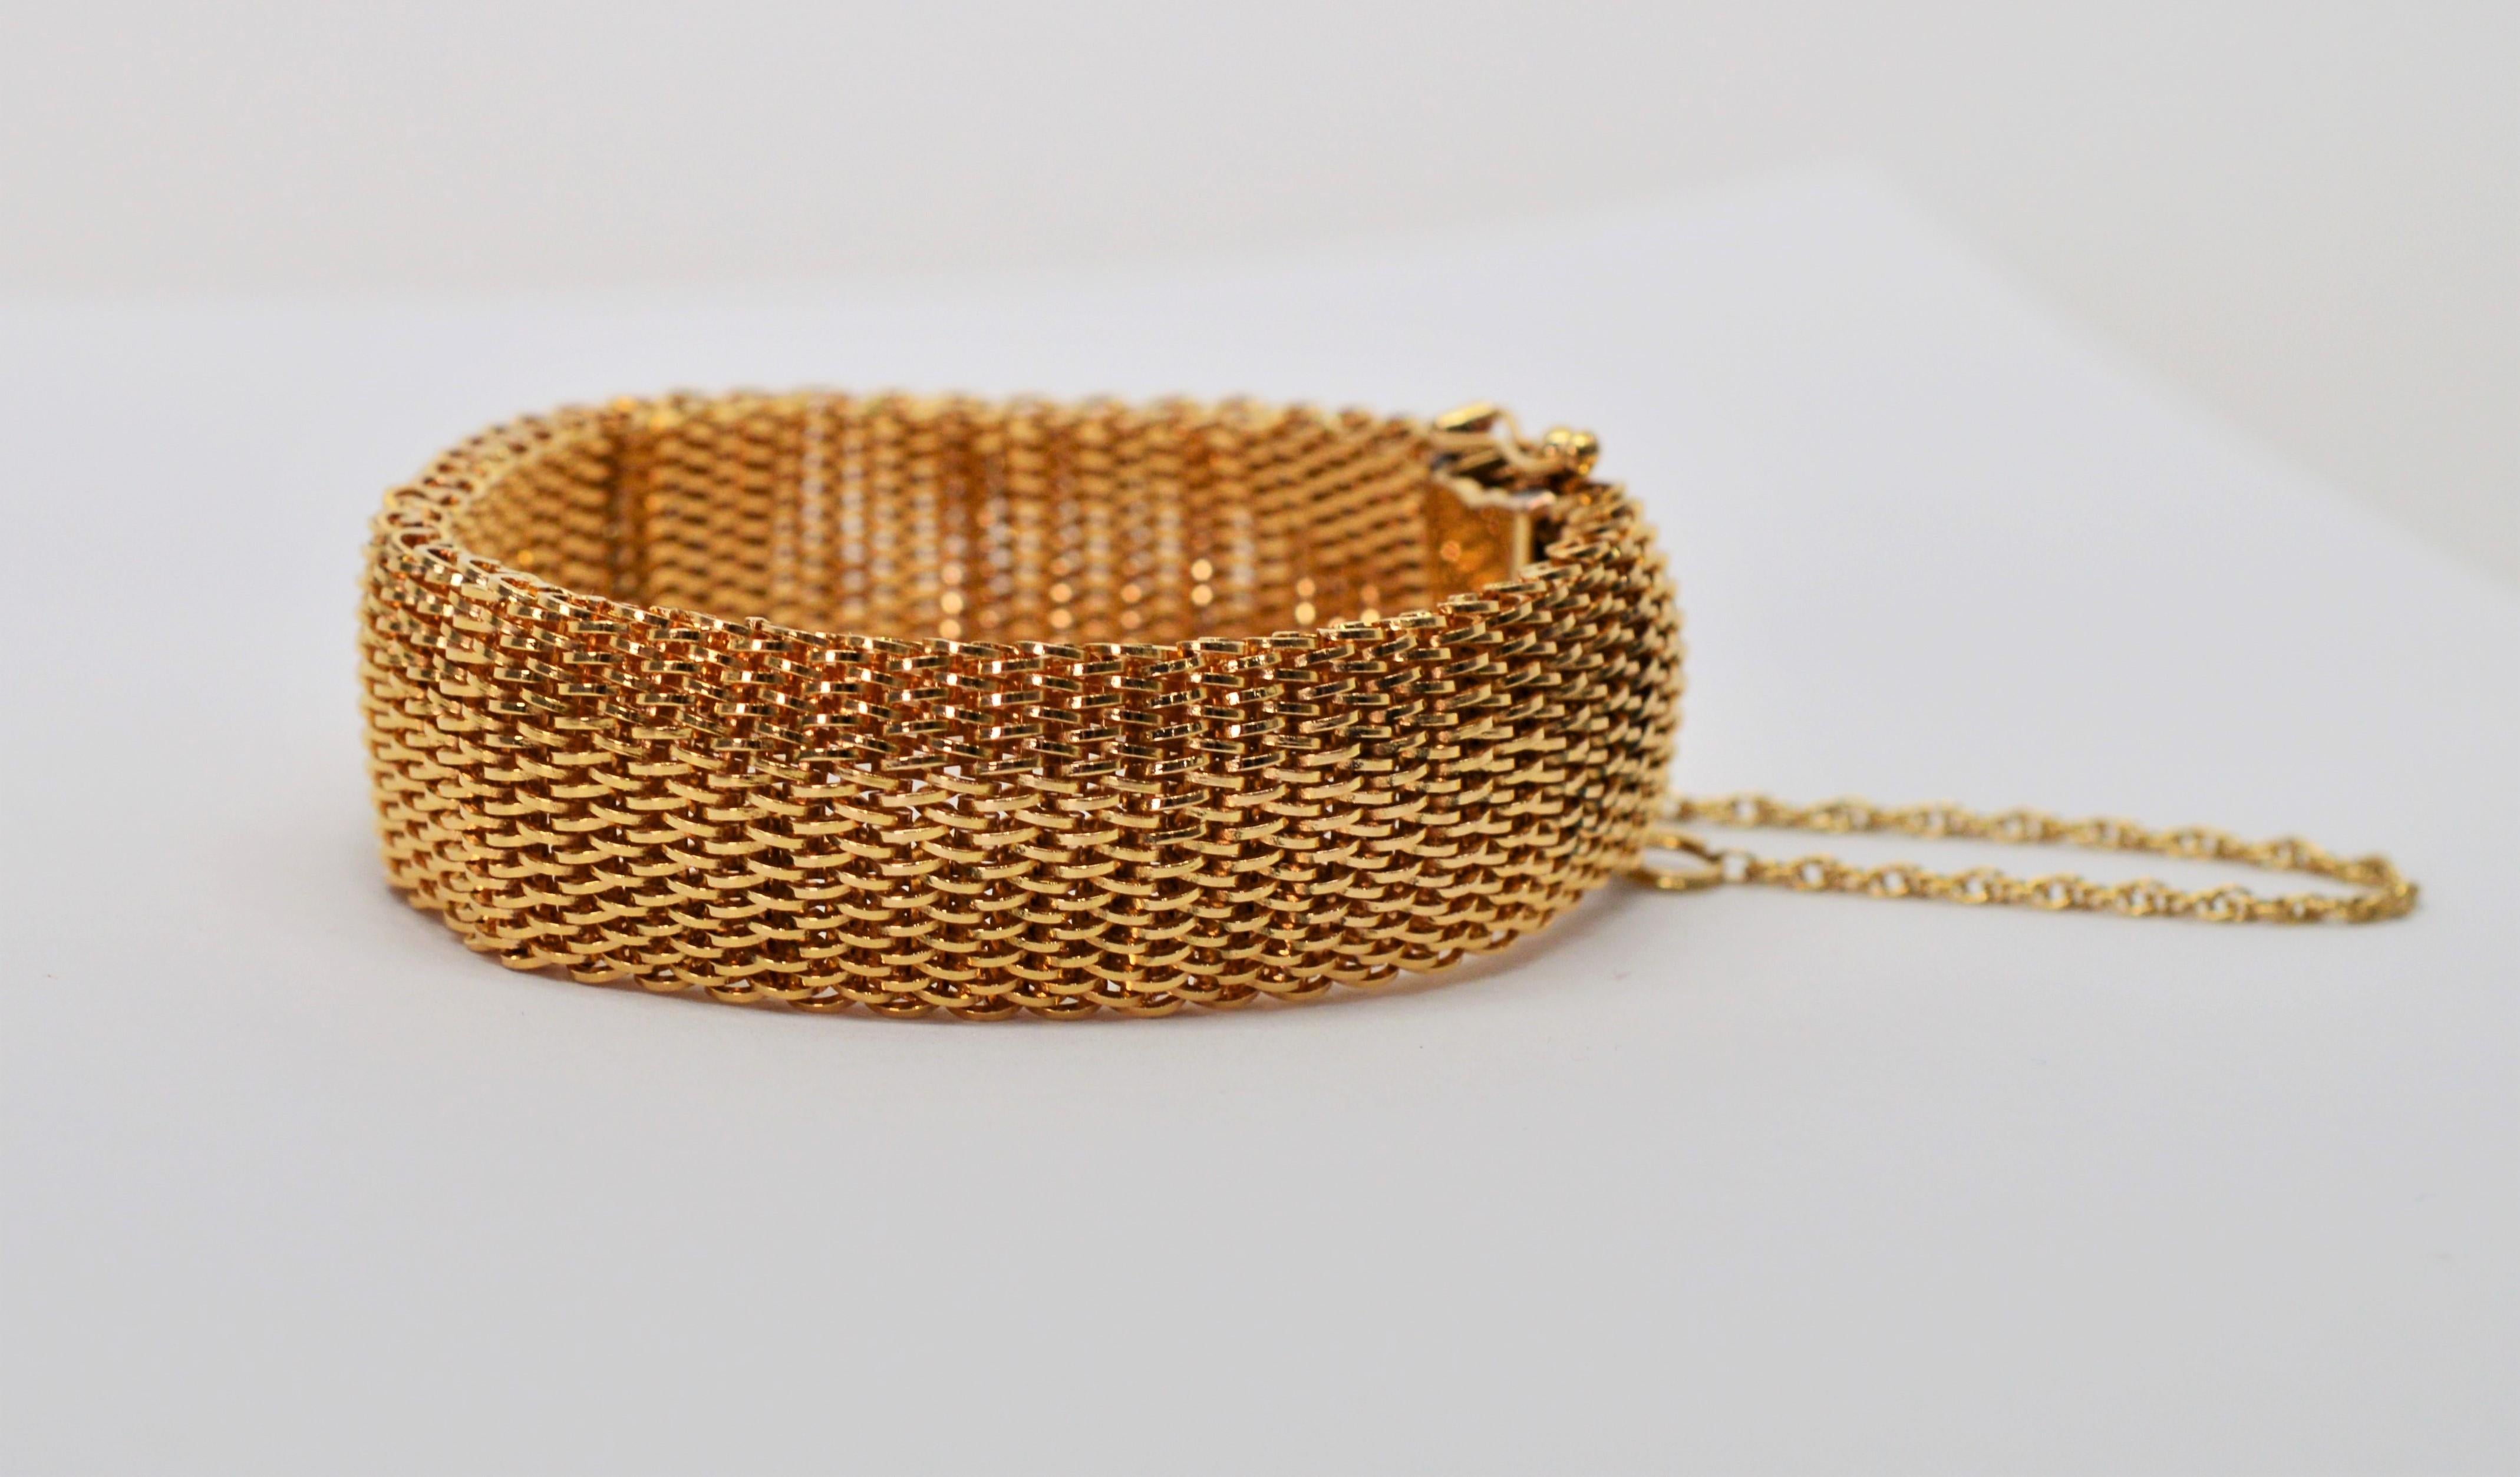 En or jaune brillant de dix-huit carats, ce bracelet à maille flexible est intemporel. Toujours avec un look frais et confortable, vous trouverez que c'est l'une des pièces les plus polyvalentes de votre garde-robe de bijoux. Pour déterminer la